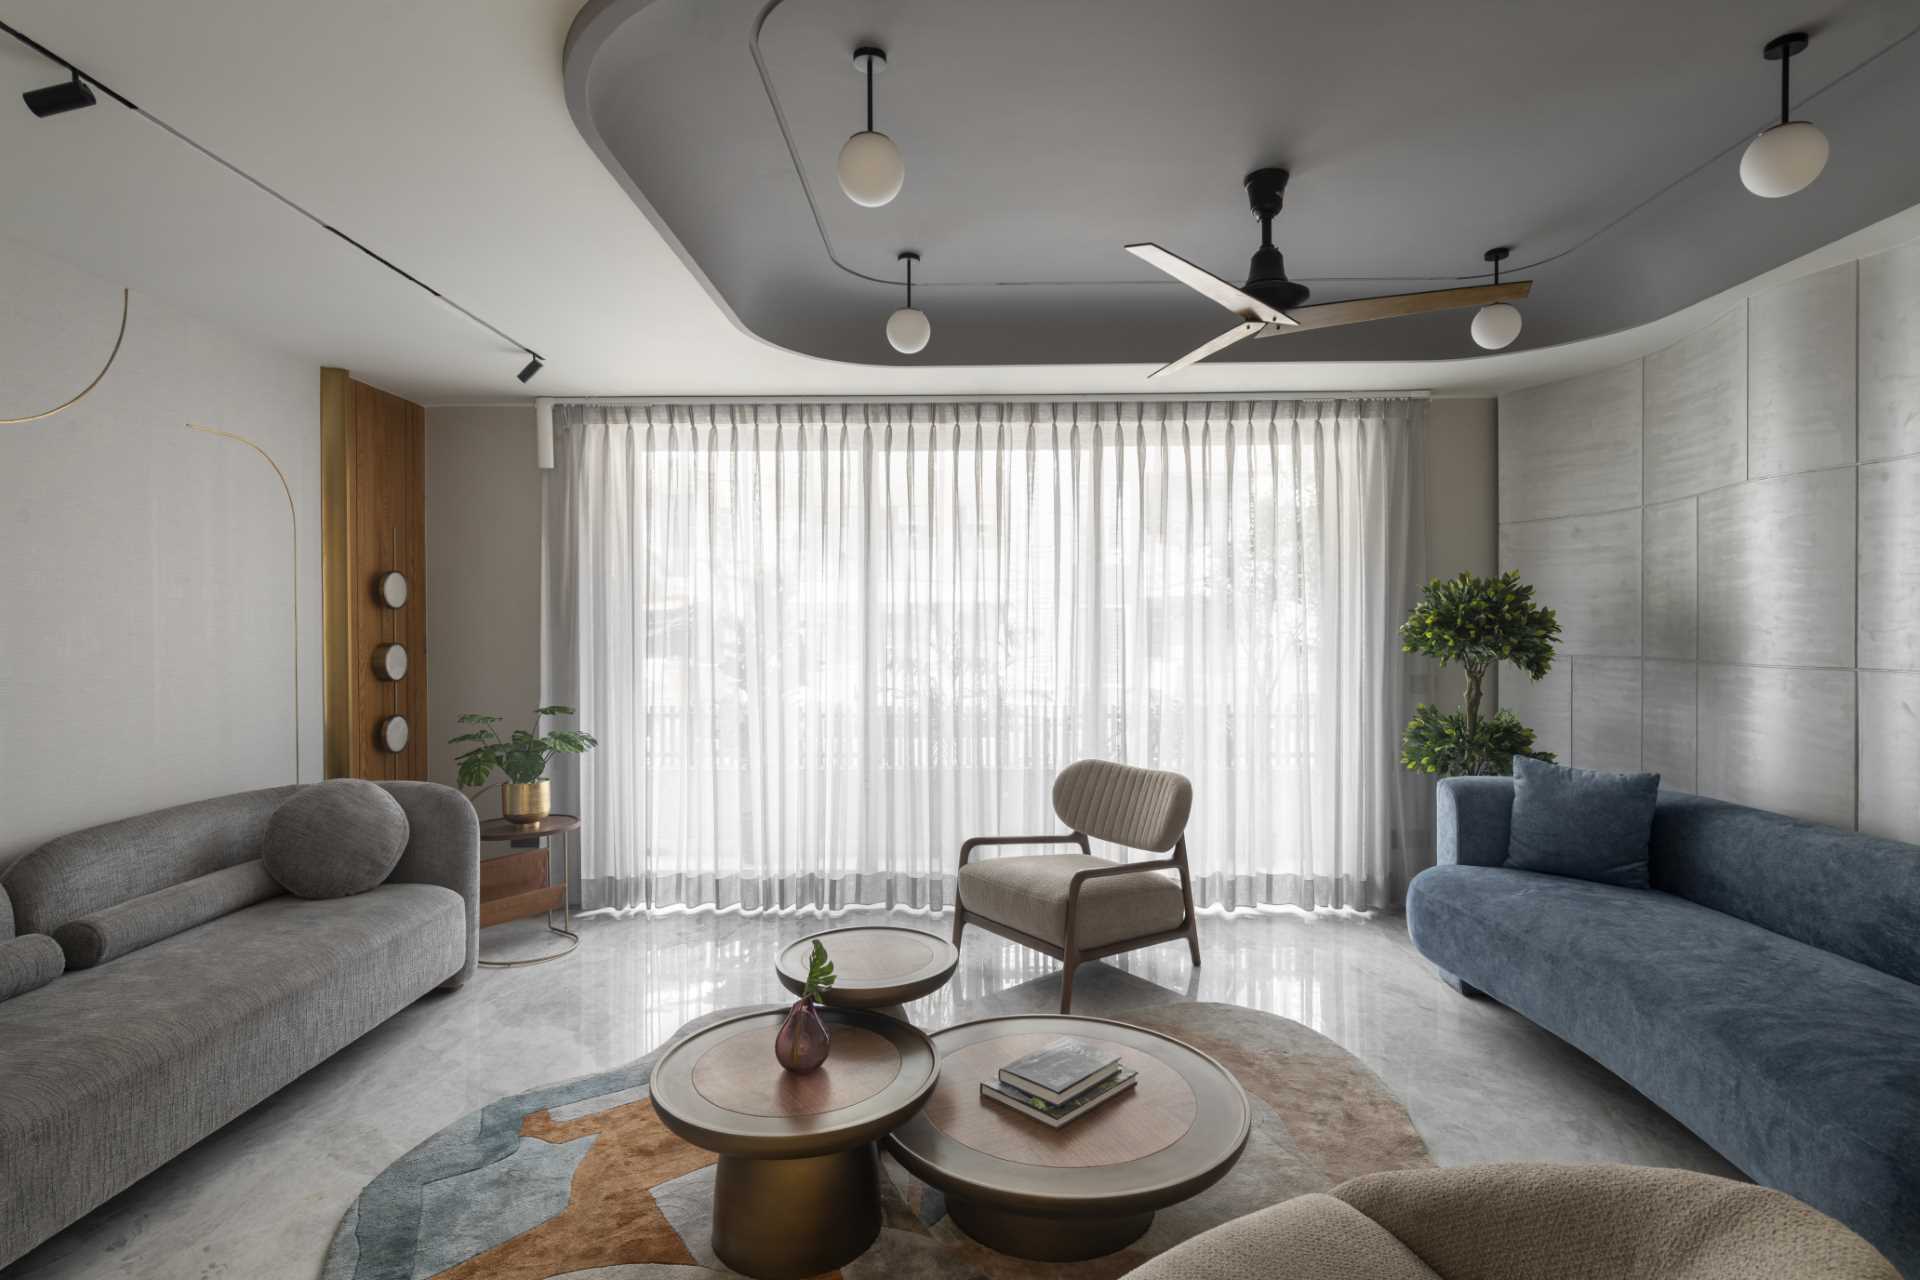 A contemporary formal living room.